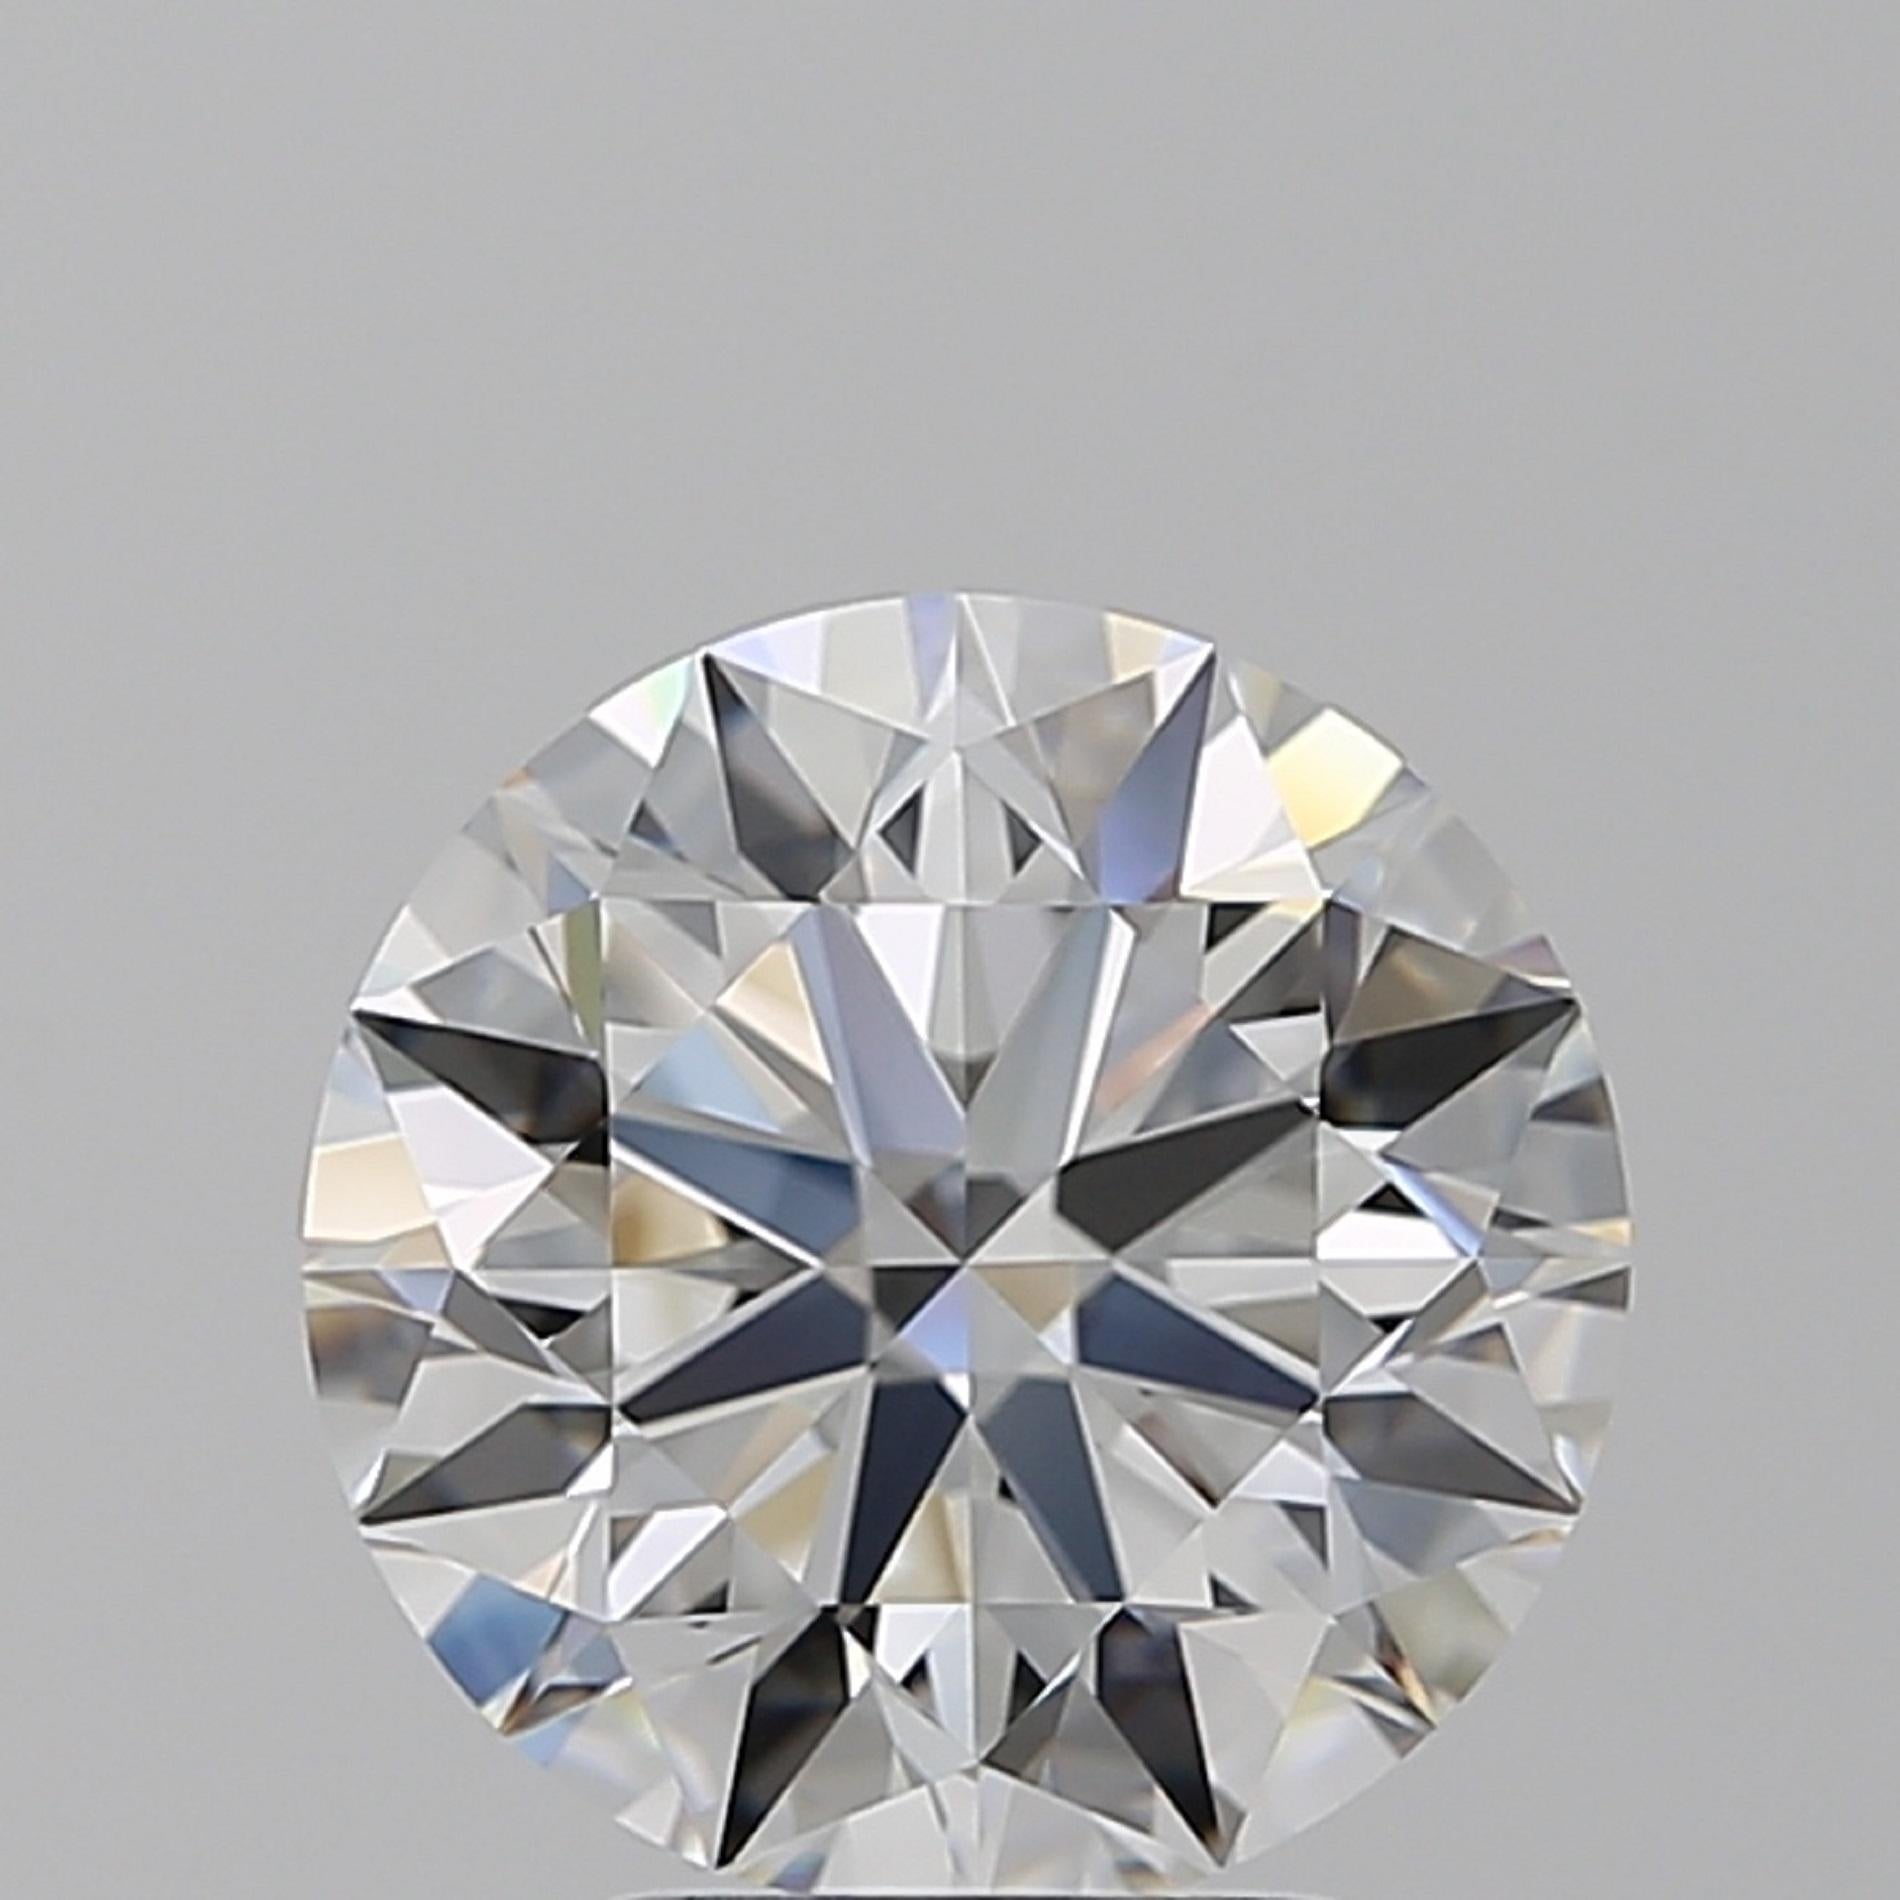 Ein erstaunliches Paar runder Diamanten mit Brillantschliff, gefasst in massivem Platin
F/E Farbe
VVS-Klarheit
Keine Fluoreszenz 